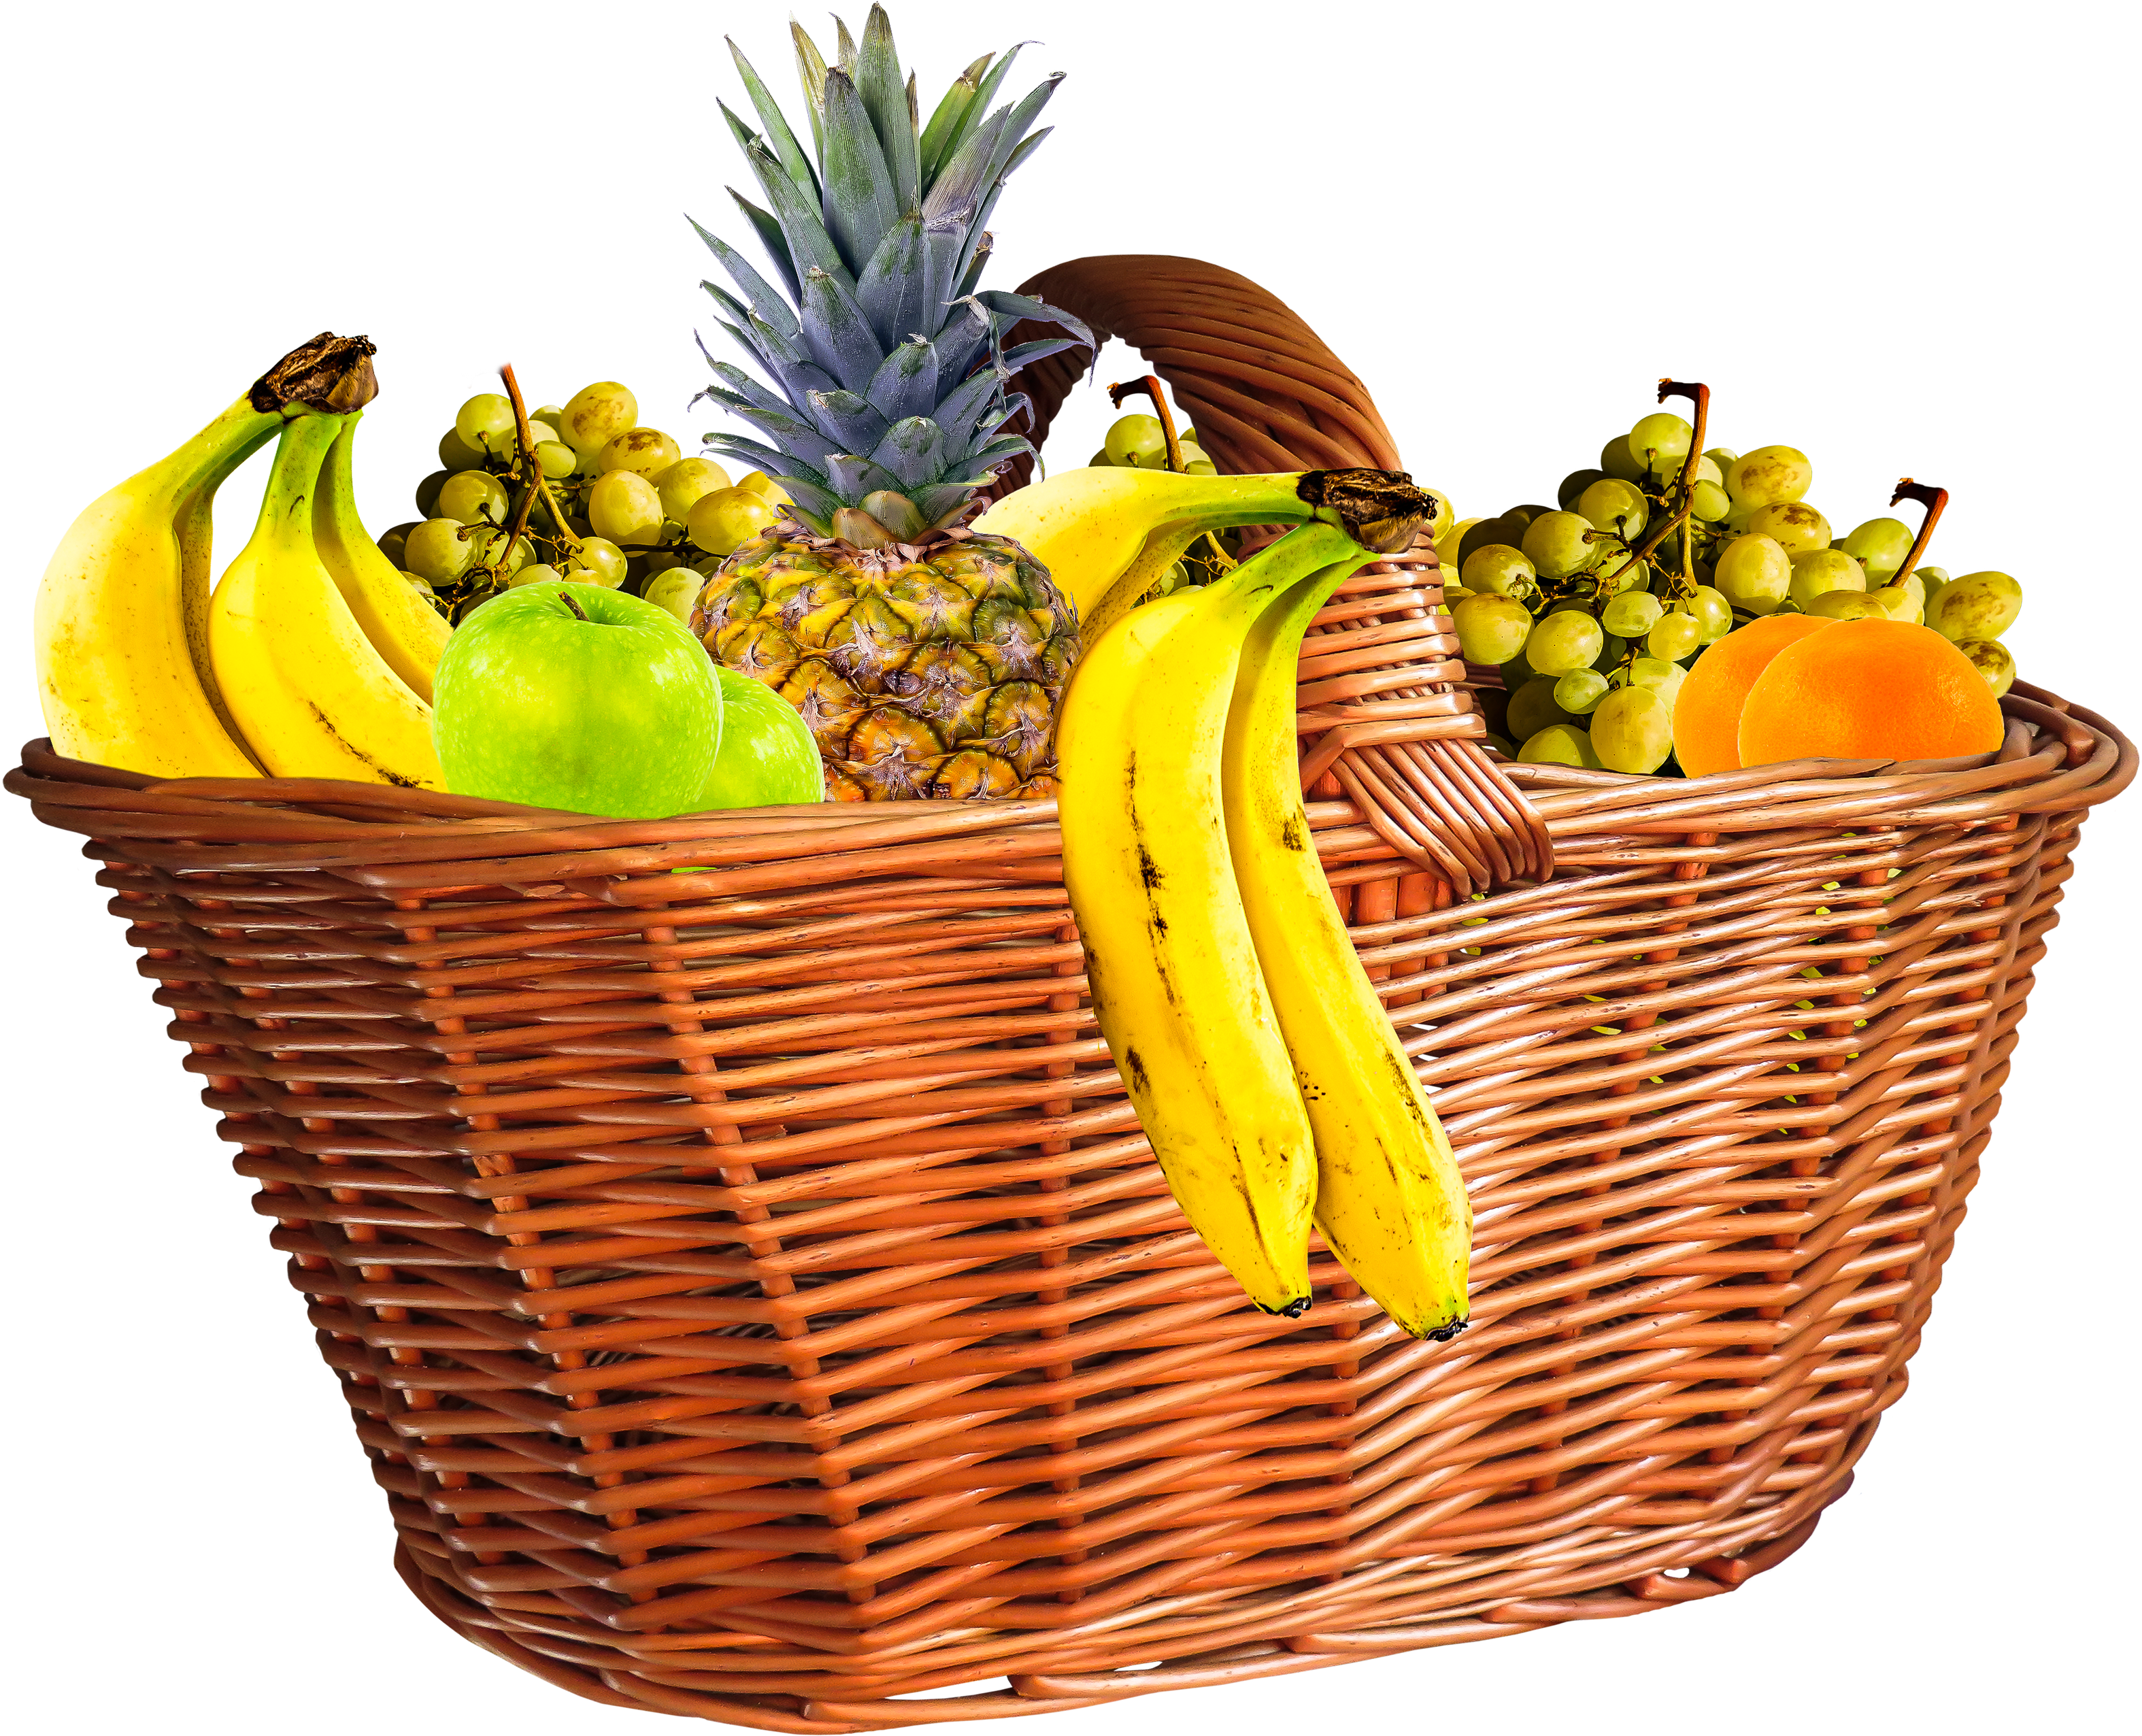 Pineapple Png 25, - Fruit Basket Transparent Background (3975x2747)